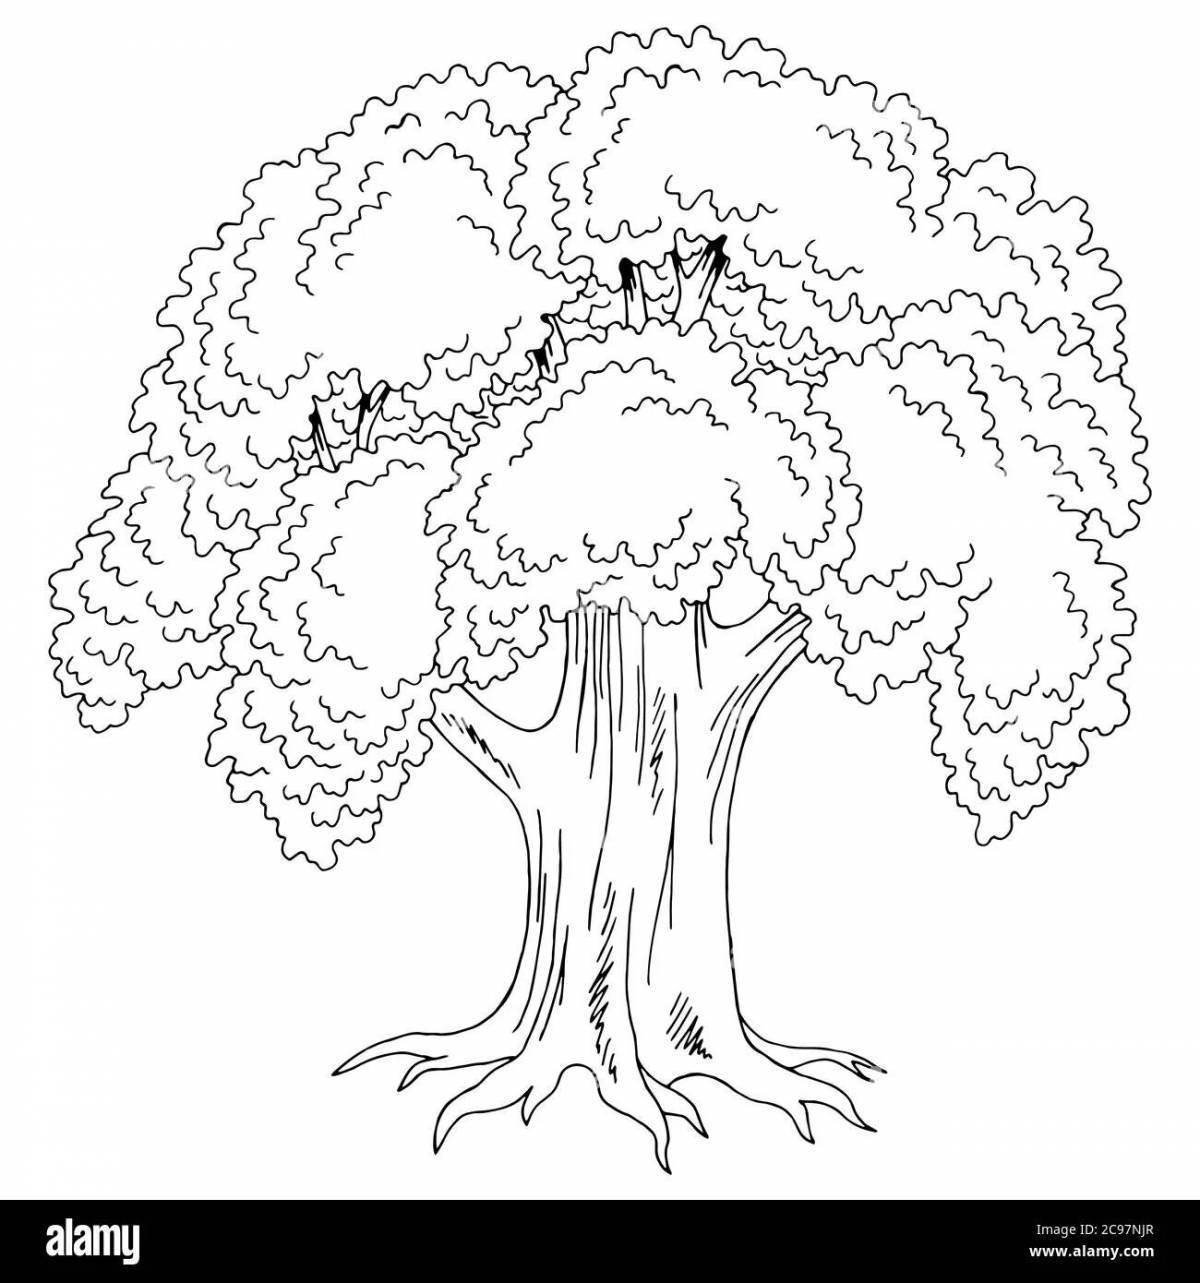 Раскраска сказочный дуб для детей